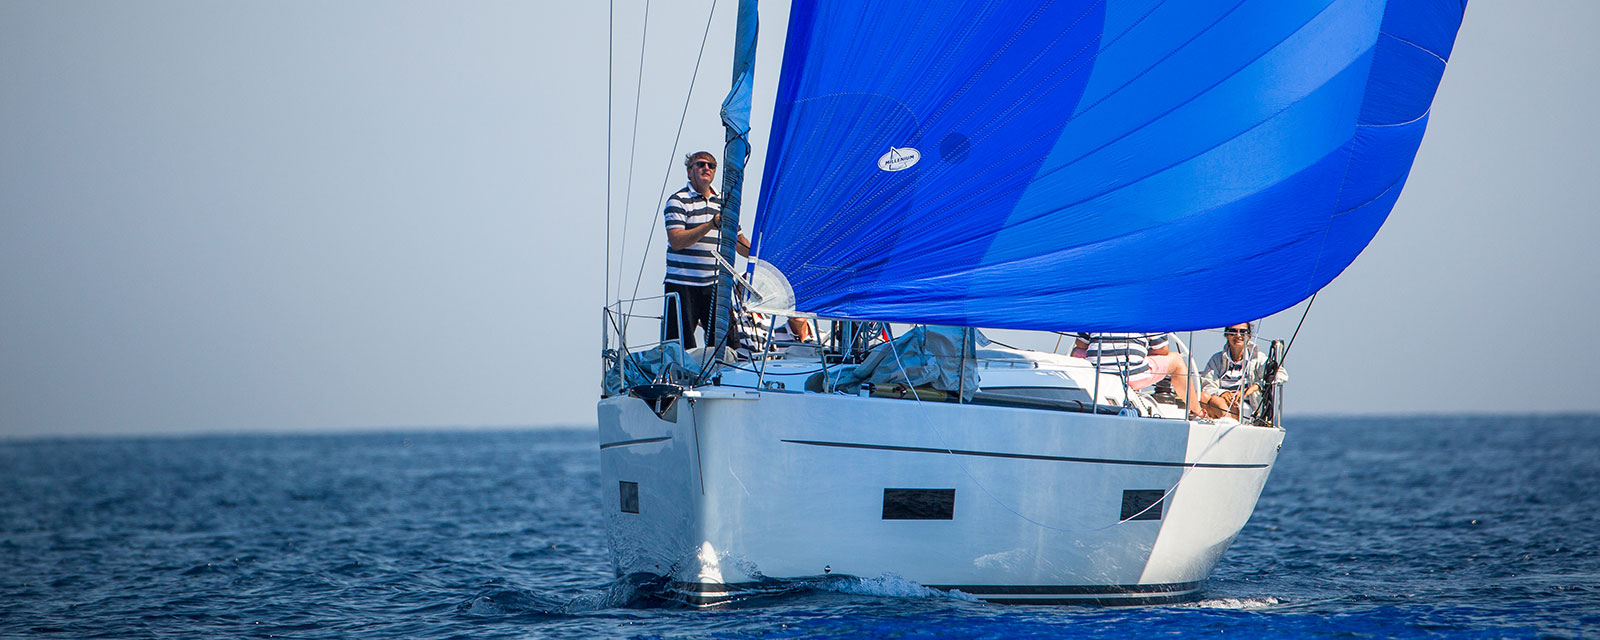 hochsee schein blue sail solaris swiss nautic academy